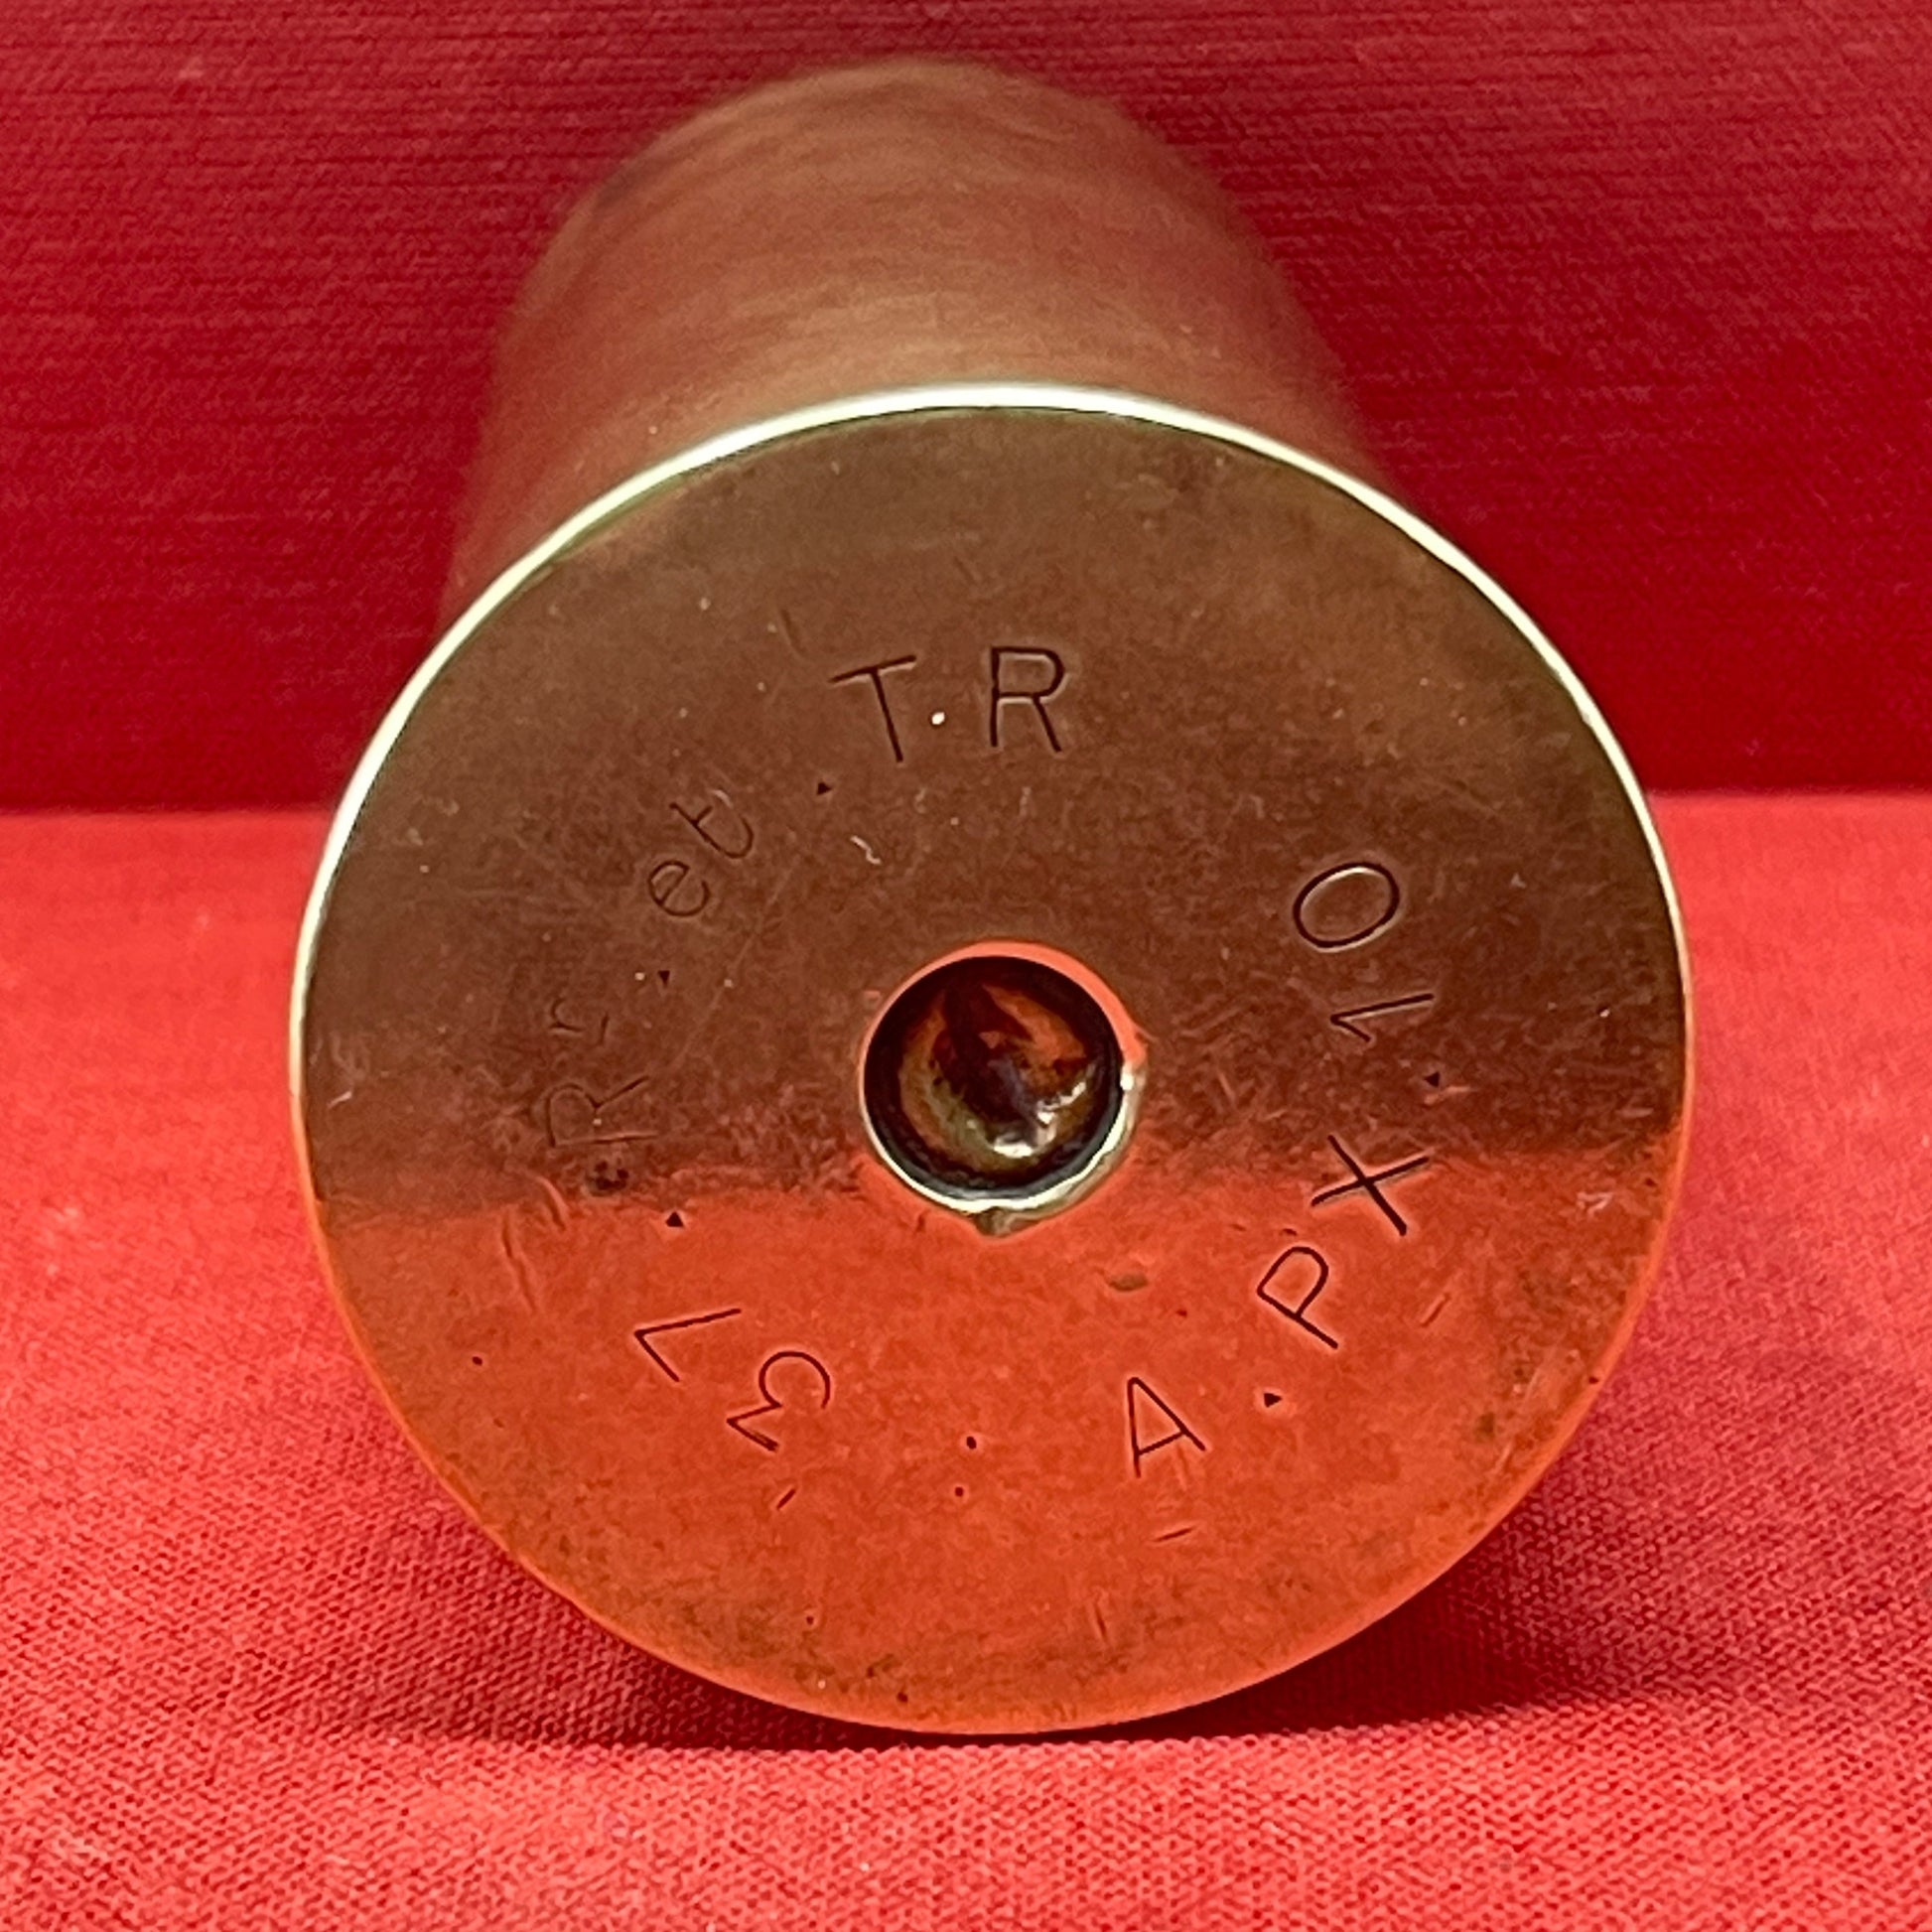 37mm 1903 Brass Cartridge Case